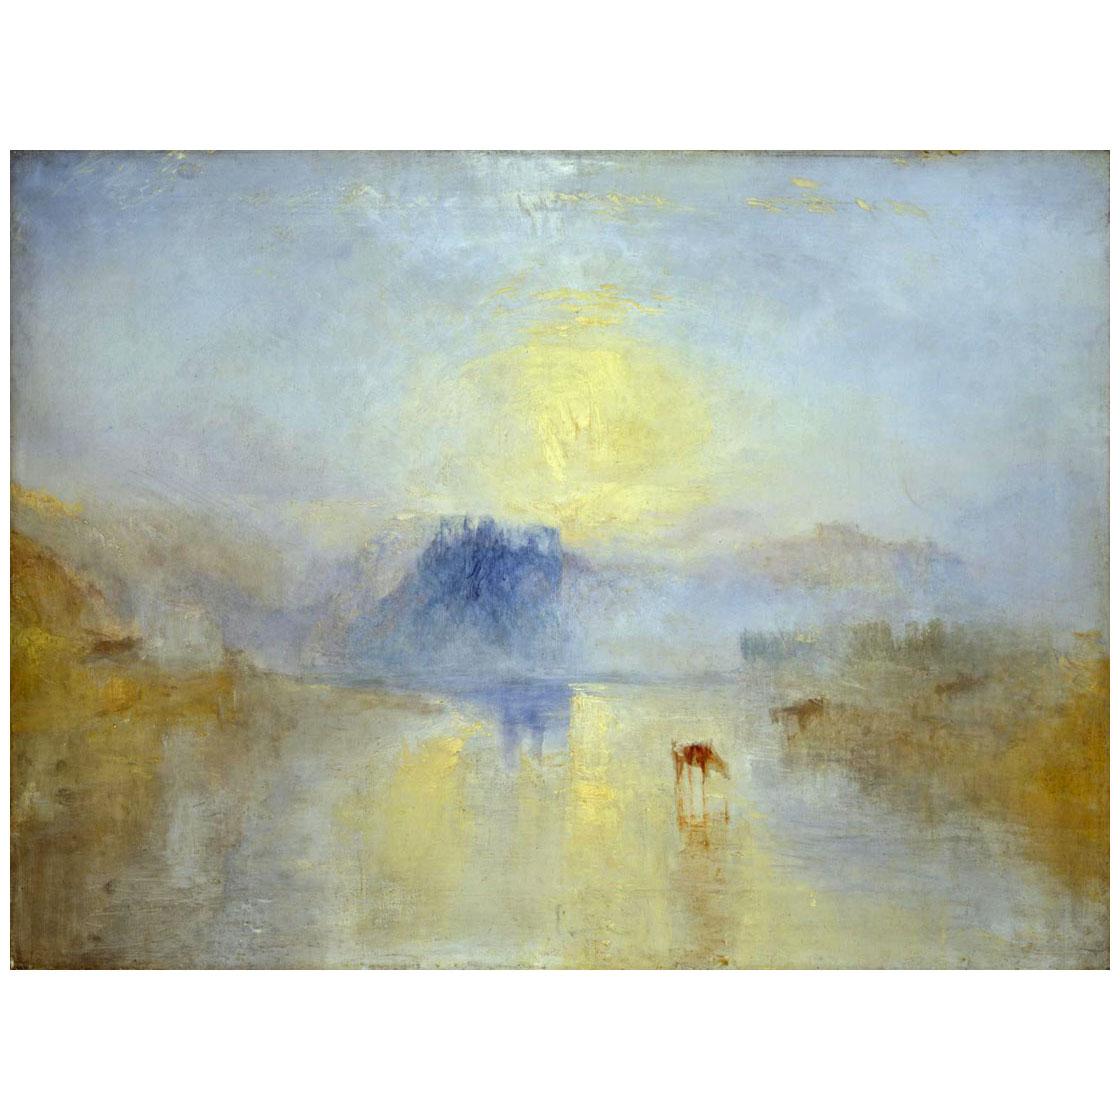 William Turner. Norham Castle. Sunrise. 1845. Tate Britain